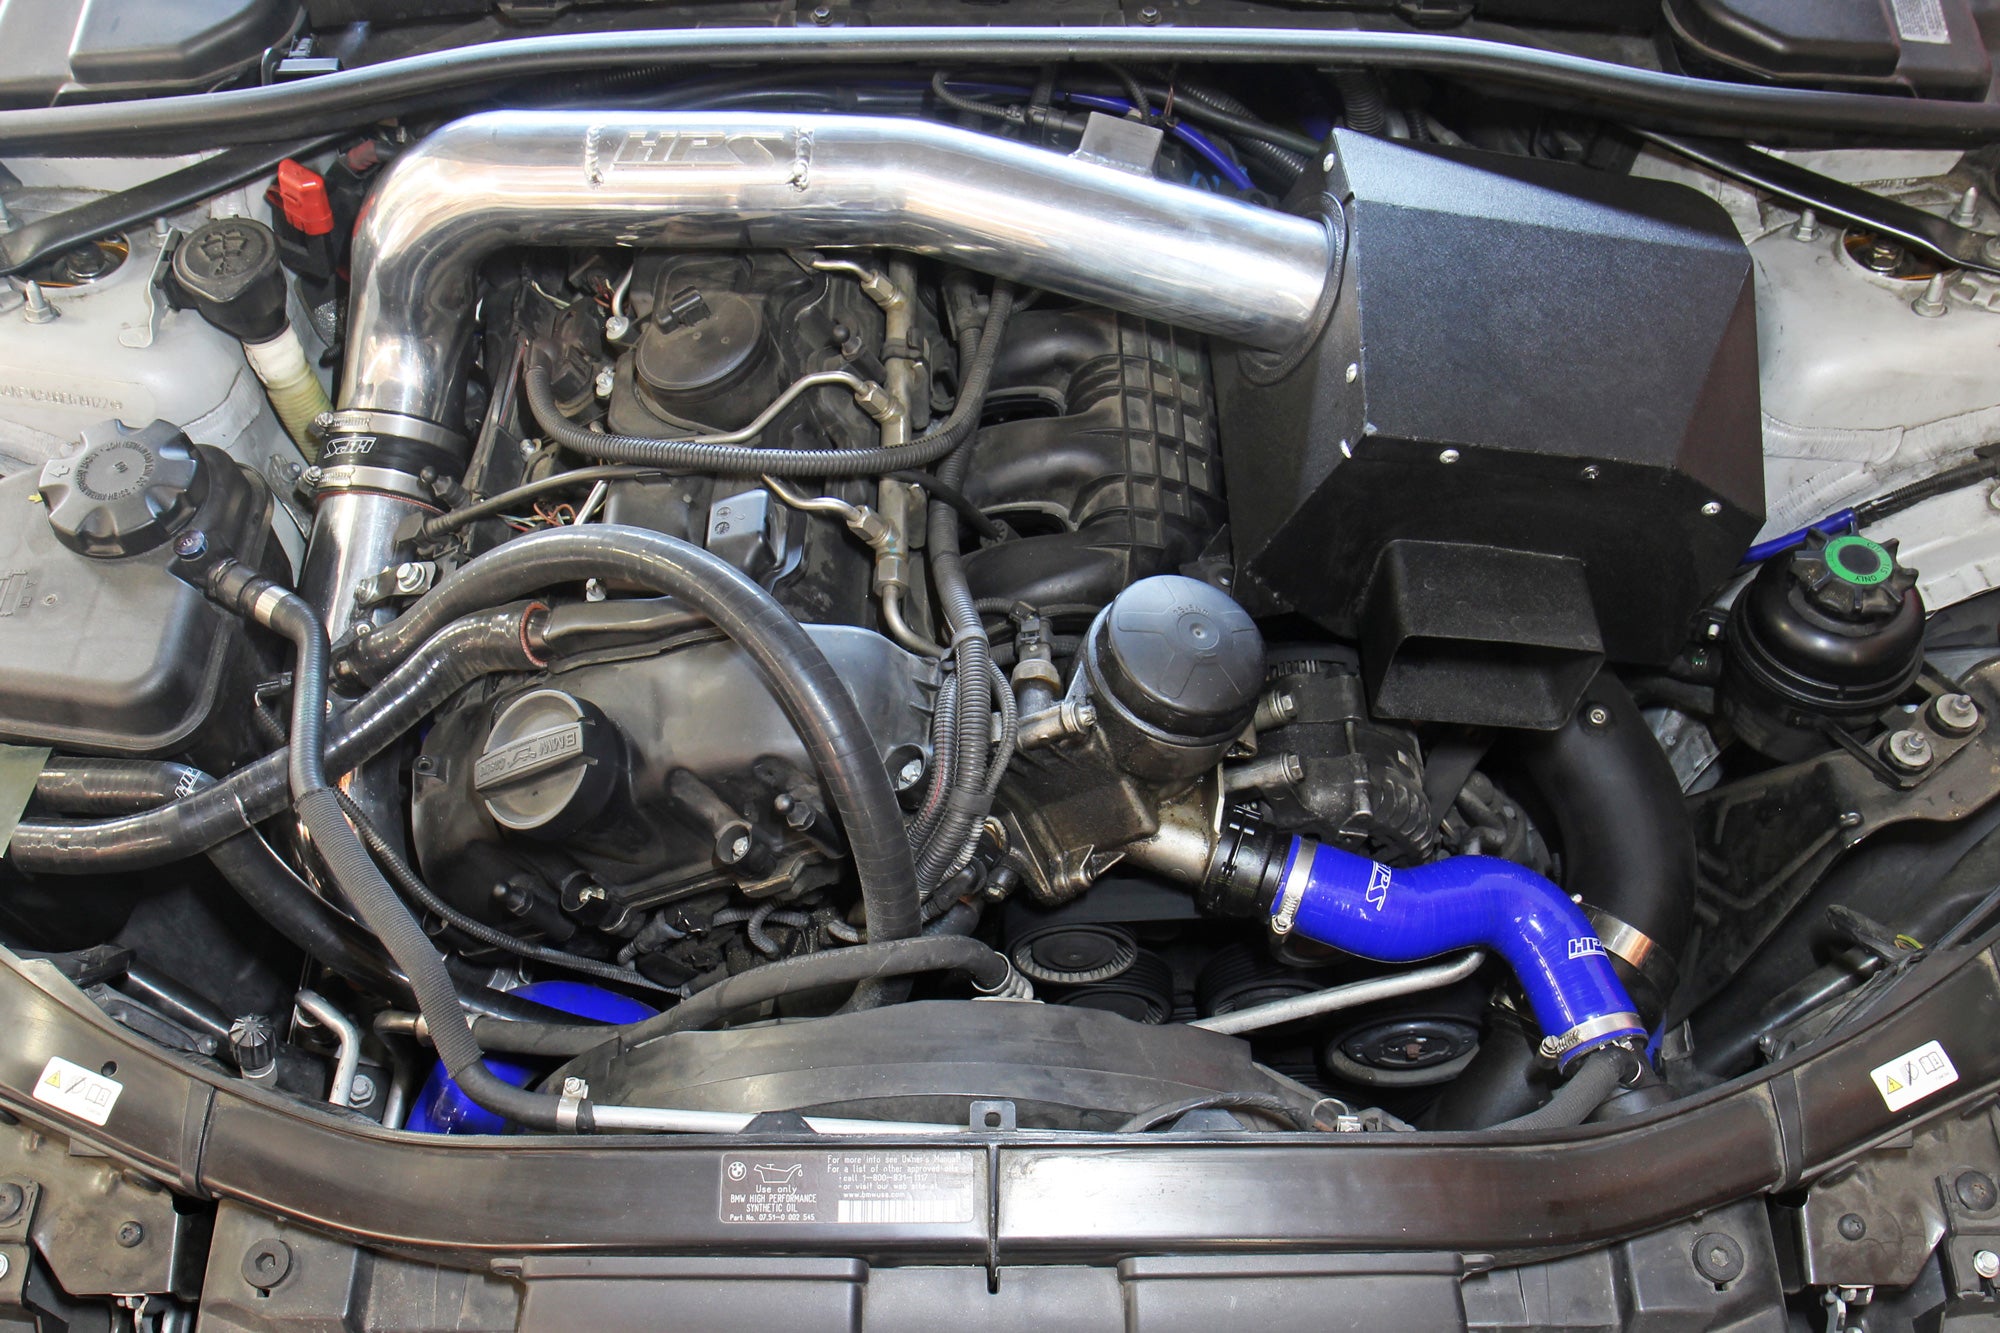 HPS Blue Silicone Radiator Heater Coolant Hoses Installed 2011-2013 BMW 335i 3.0L Turbo N55 E90 E91 E92 E93 E9X 57-1860